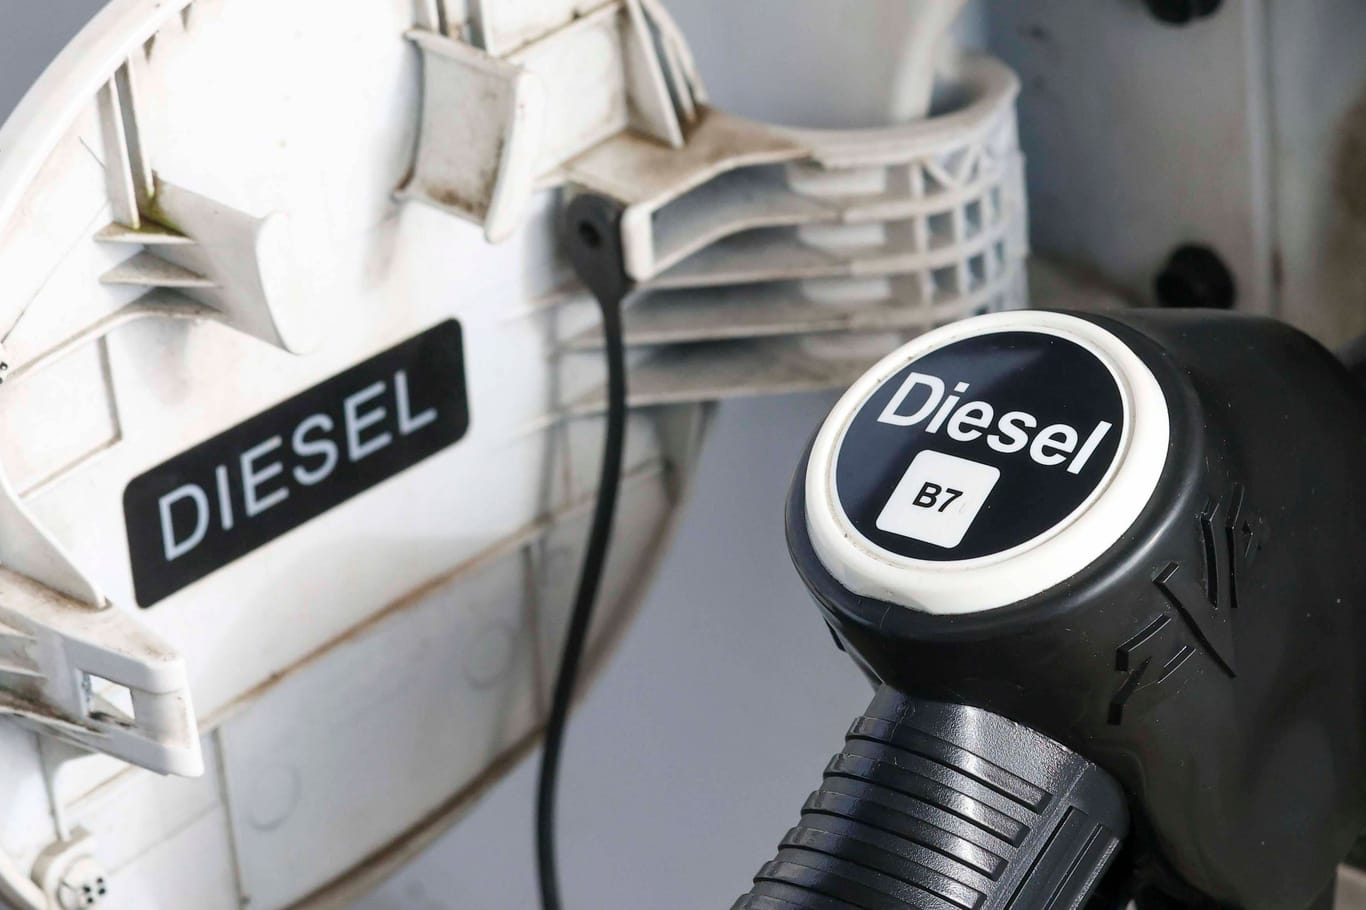 Diesel: Der Antrieb eines chinesischen Motorenherstellers hat jetzt offenbar einen neuen Effizienzrekord aufgestellt.